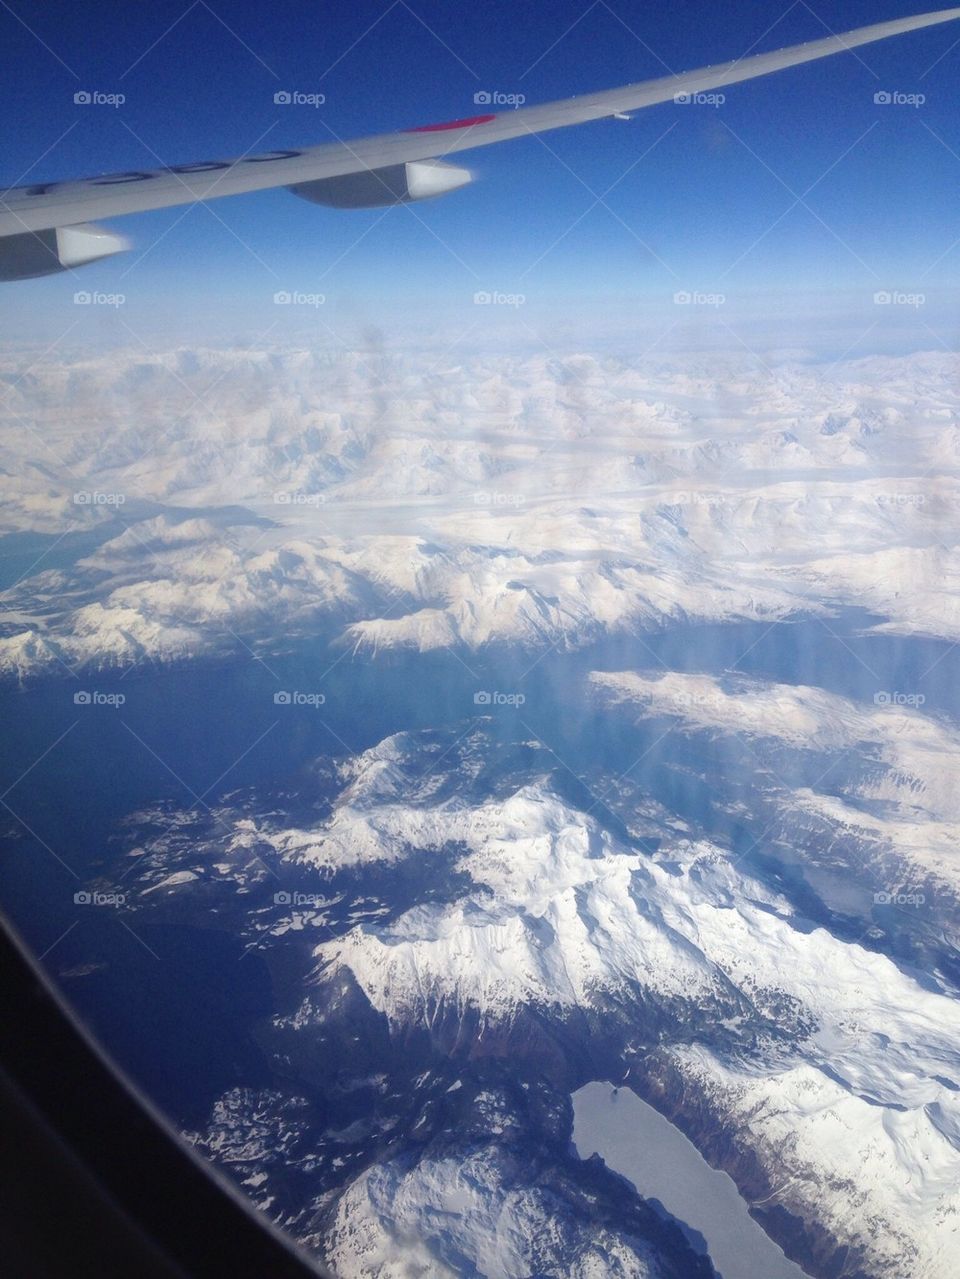 Alaska by Air